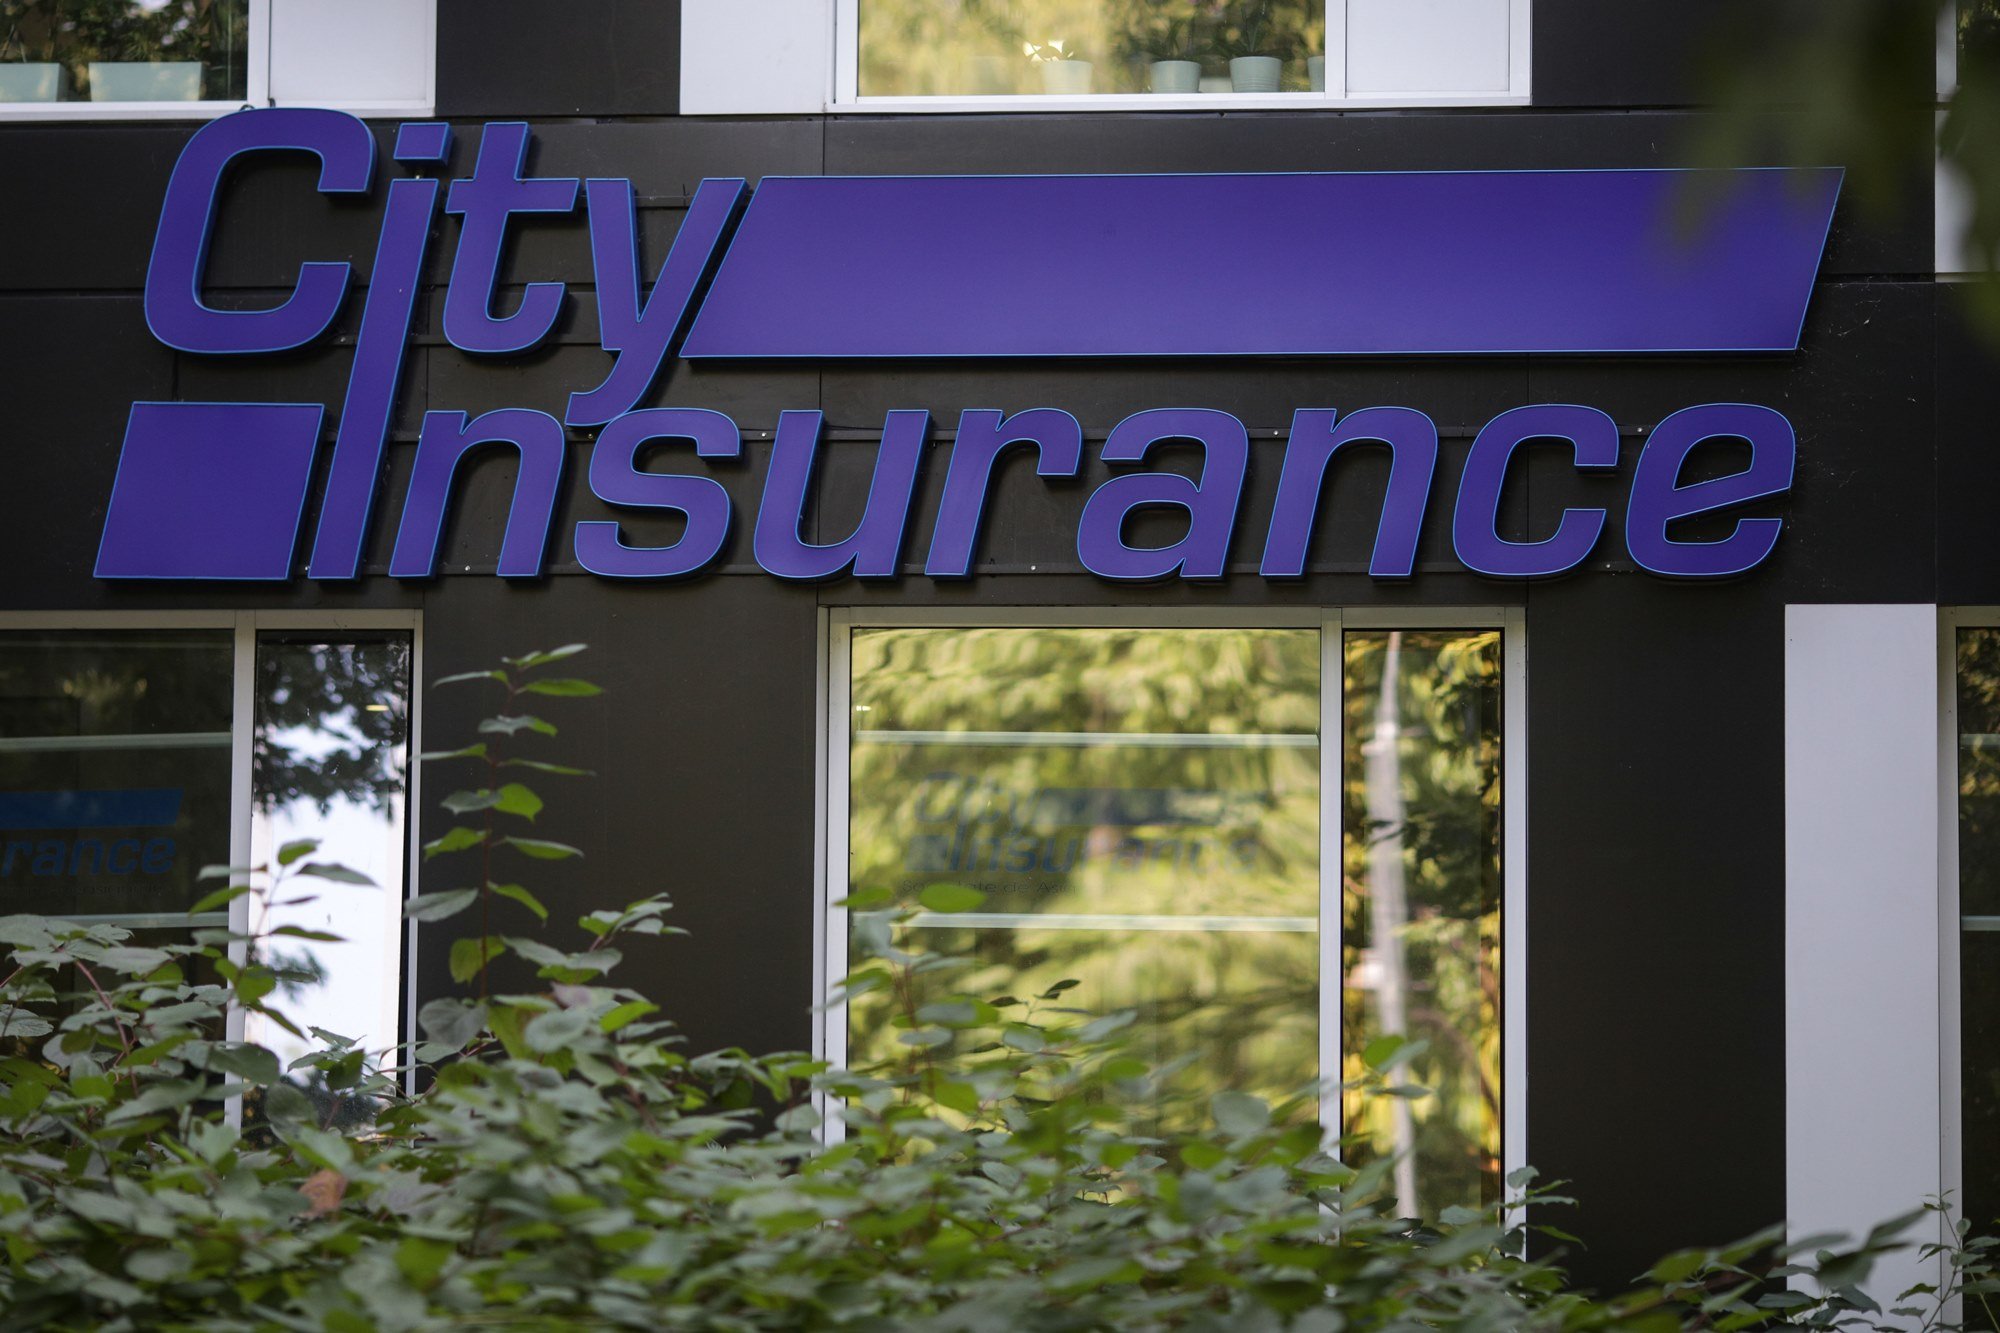 Falimentul City Insurance: Compania de asigurare plătea dobânzi de milioane de euro pentru credite fictive